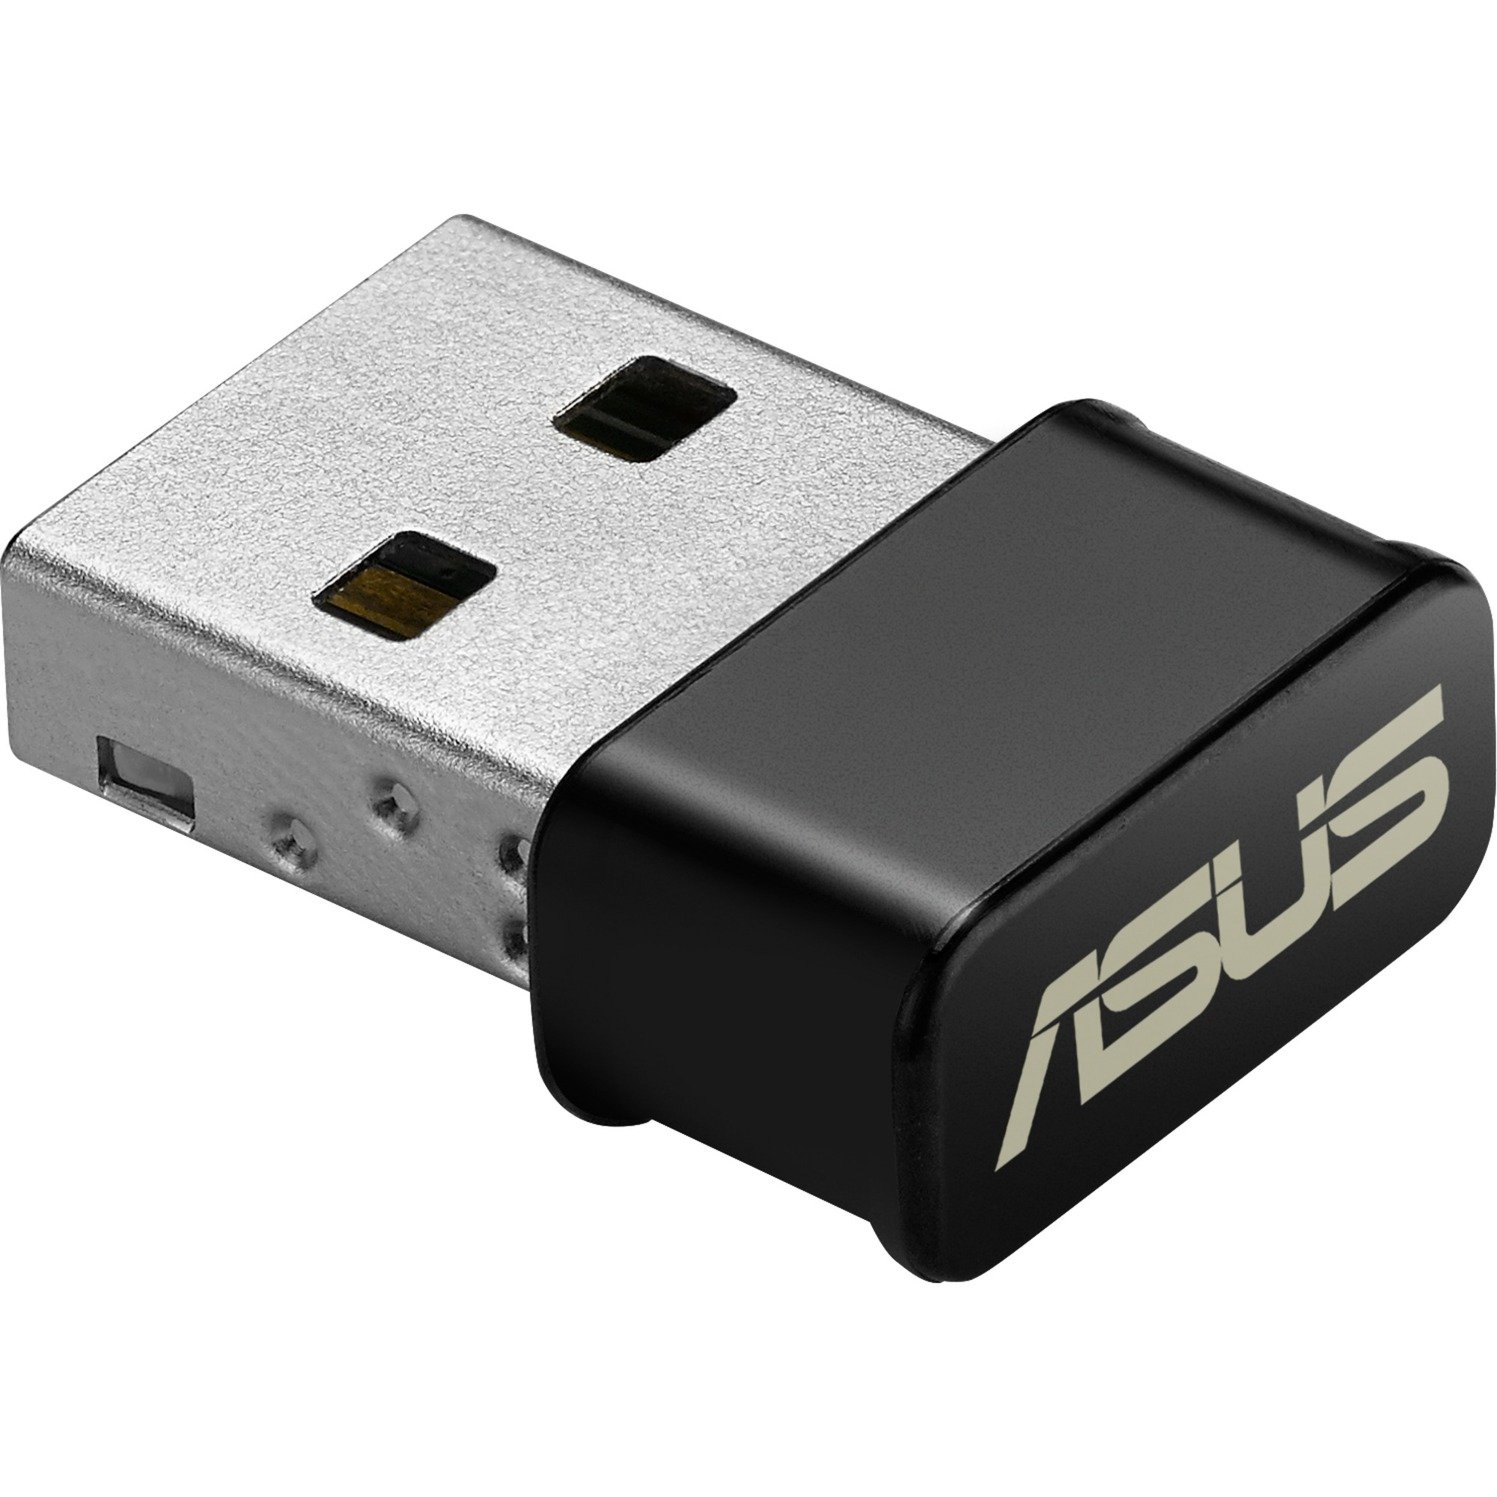 USB-AC53 Nano WLAN 867 Mbit/s, Adapter WLAN